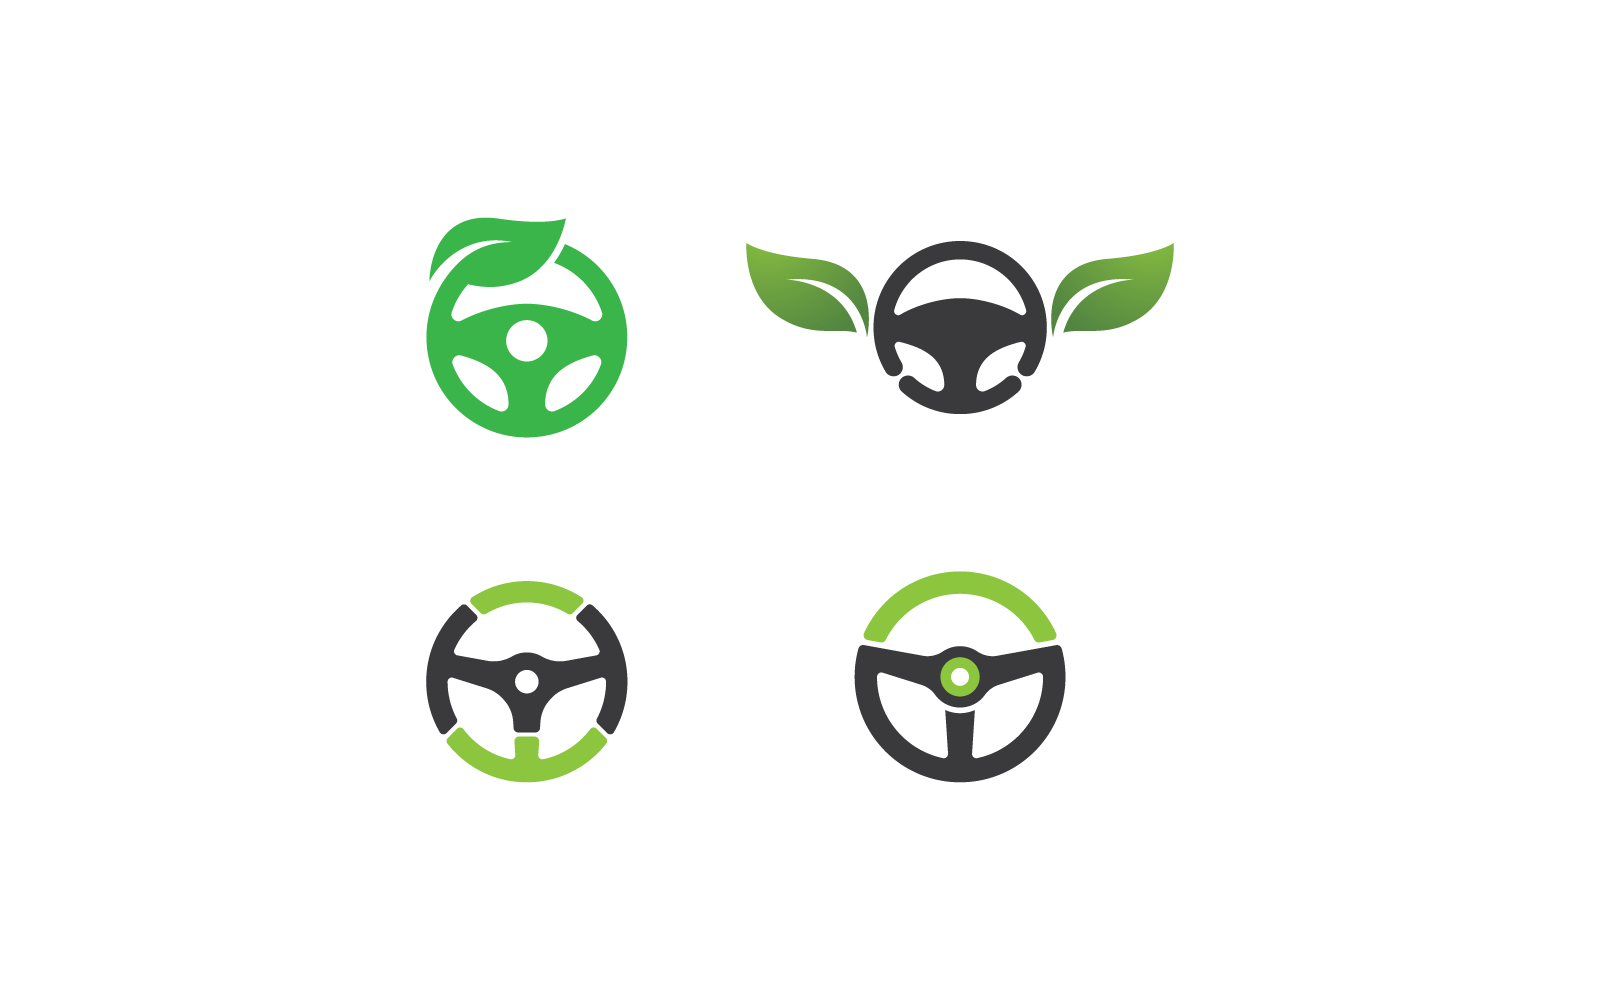 Steering wheel green car logo illustration vector flat design